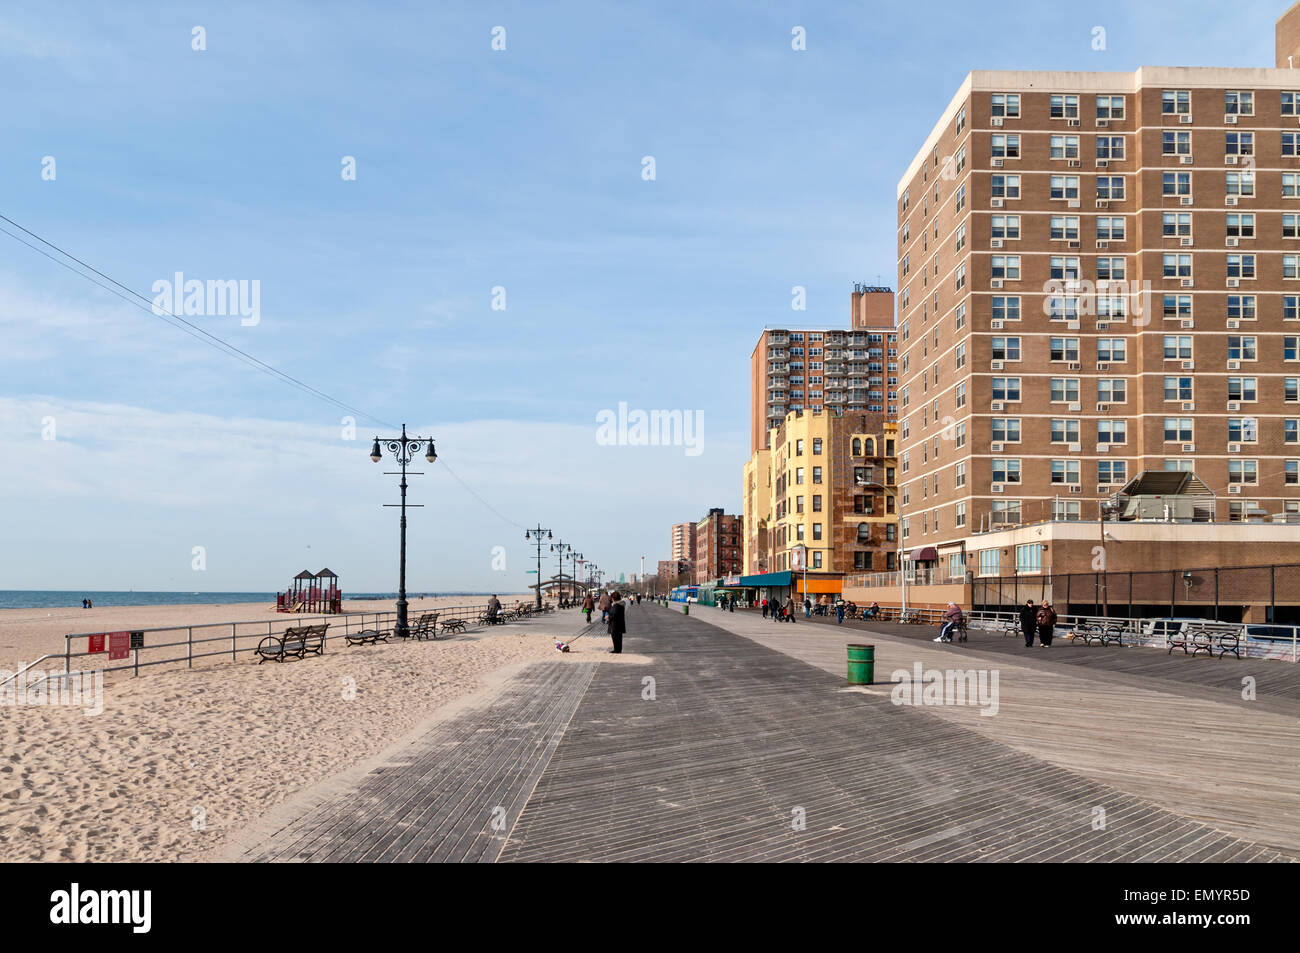 La gente seduta sulle panchine al sole e camminare davanti a un edificio con appartamenti sul lungomare presso la spiaggia di Brighton, Brooklyn NY Foto Stock